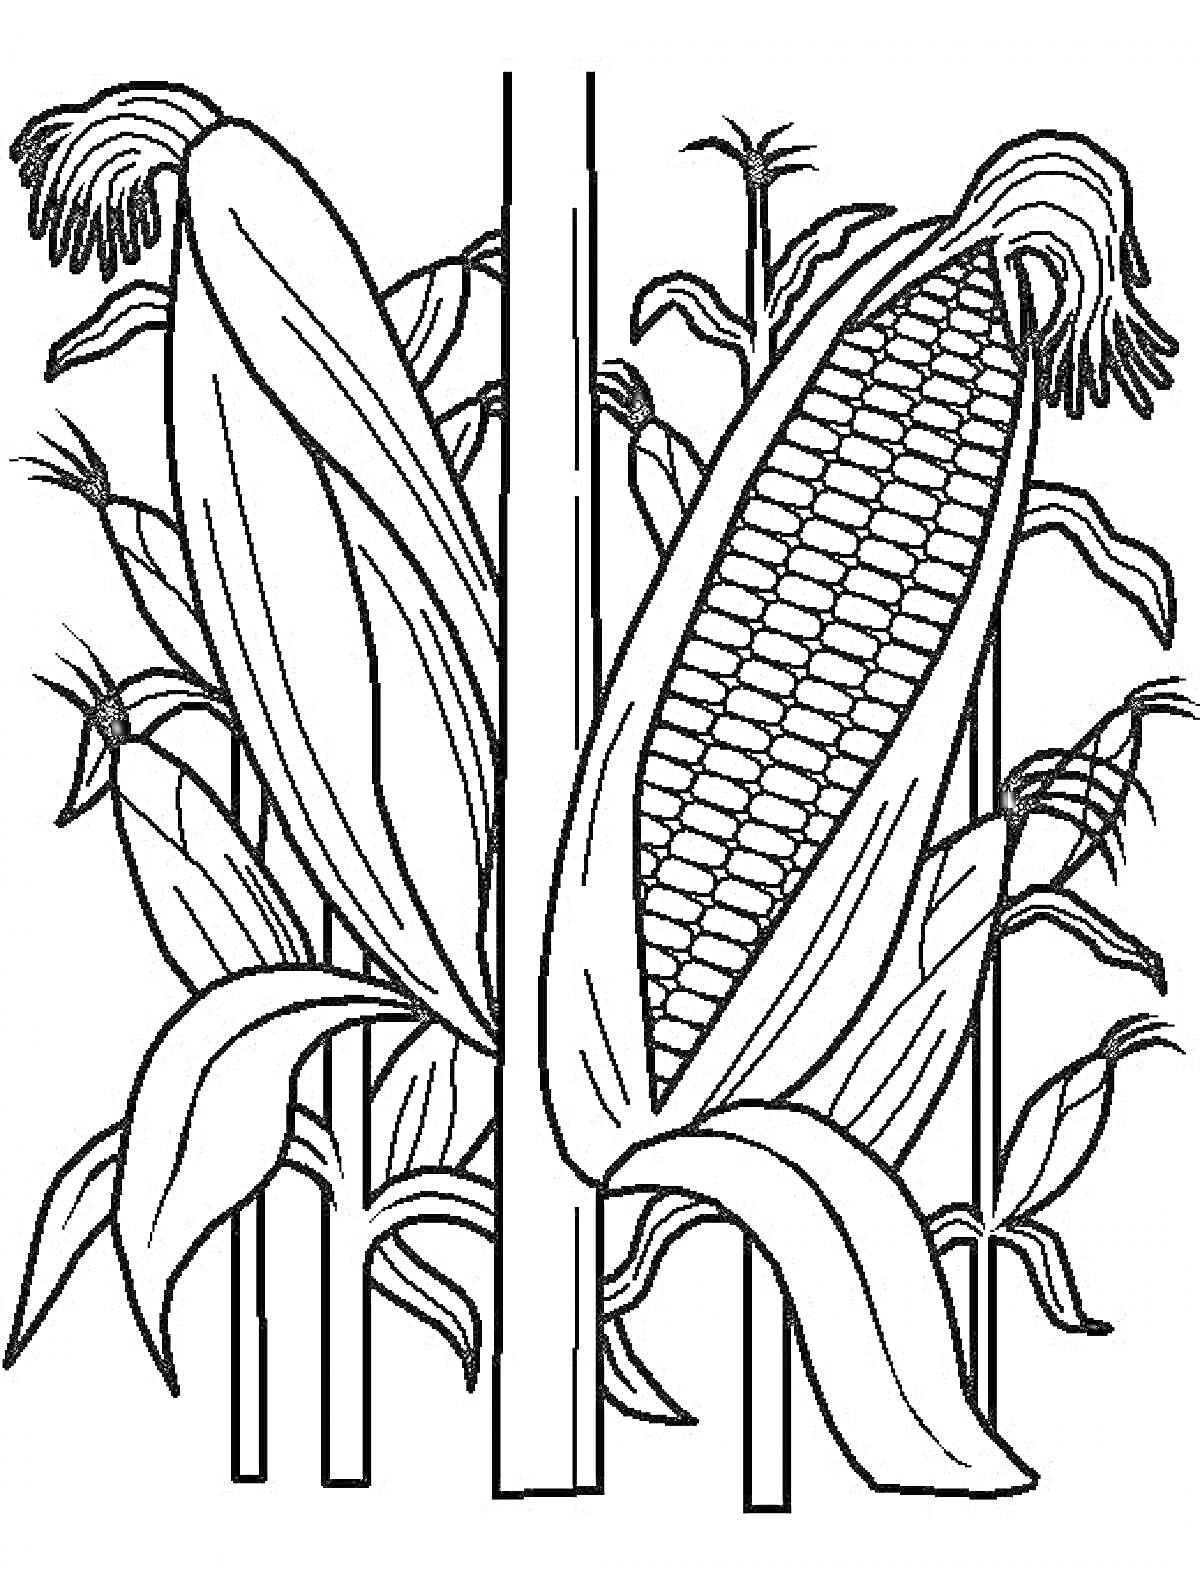 Кукуруза в стадии роста с початками и листьями